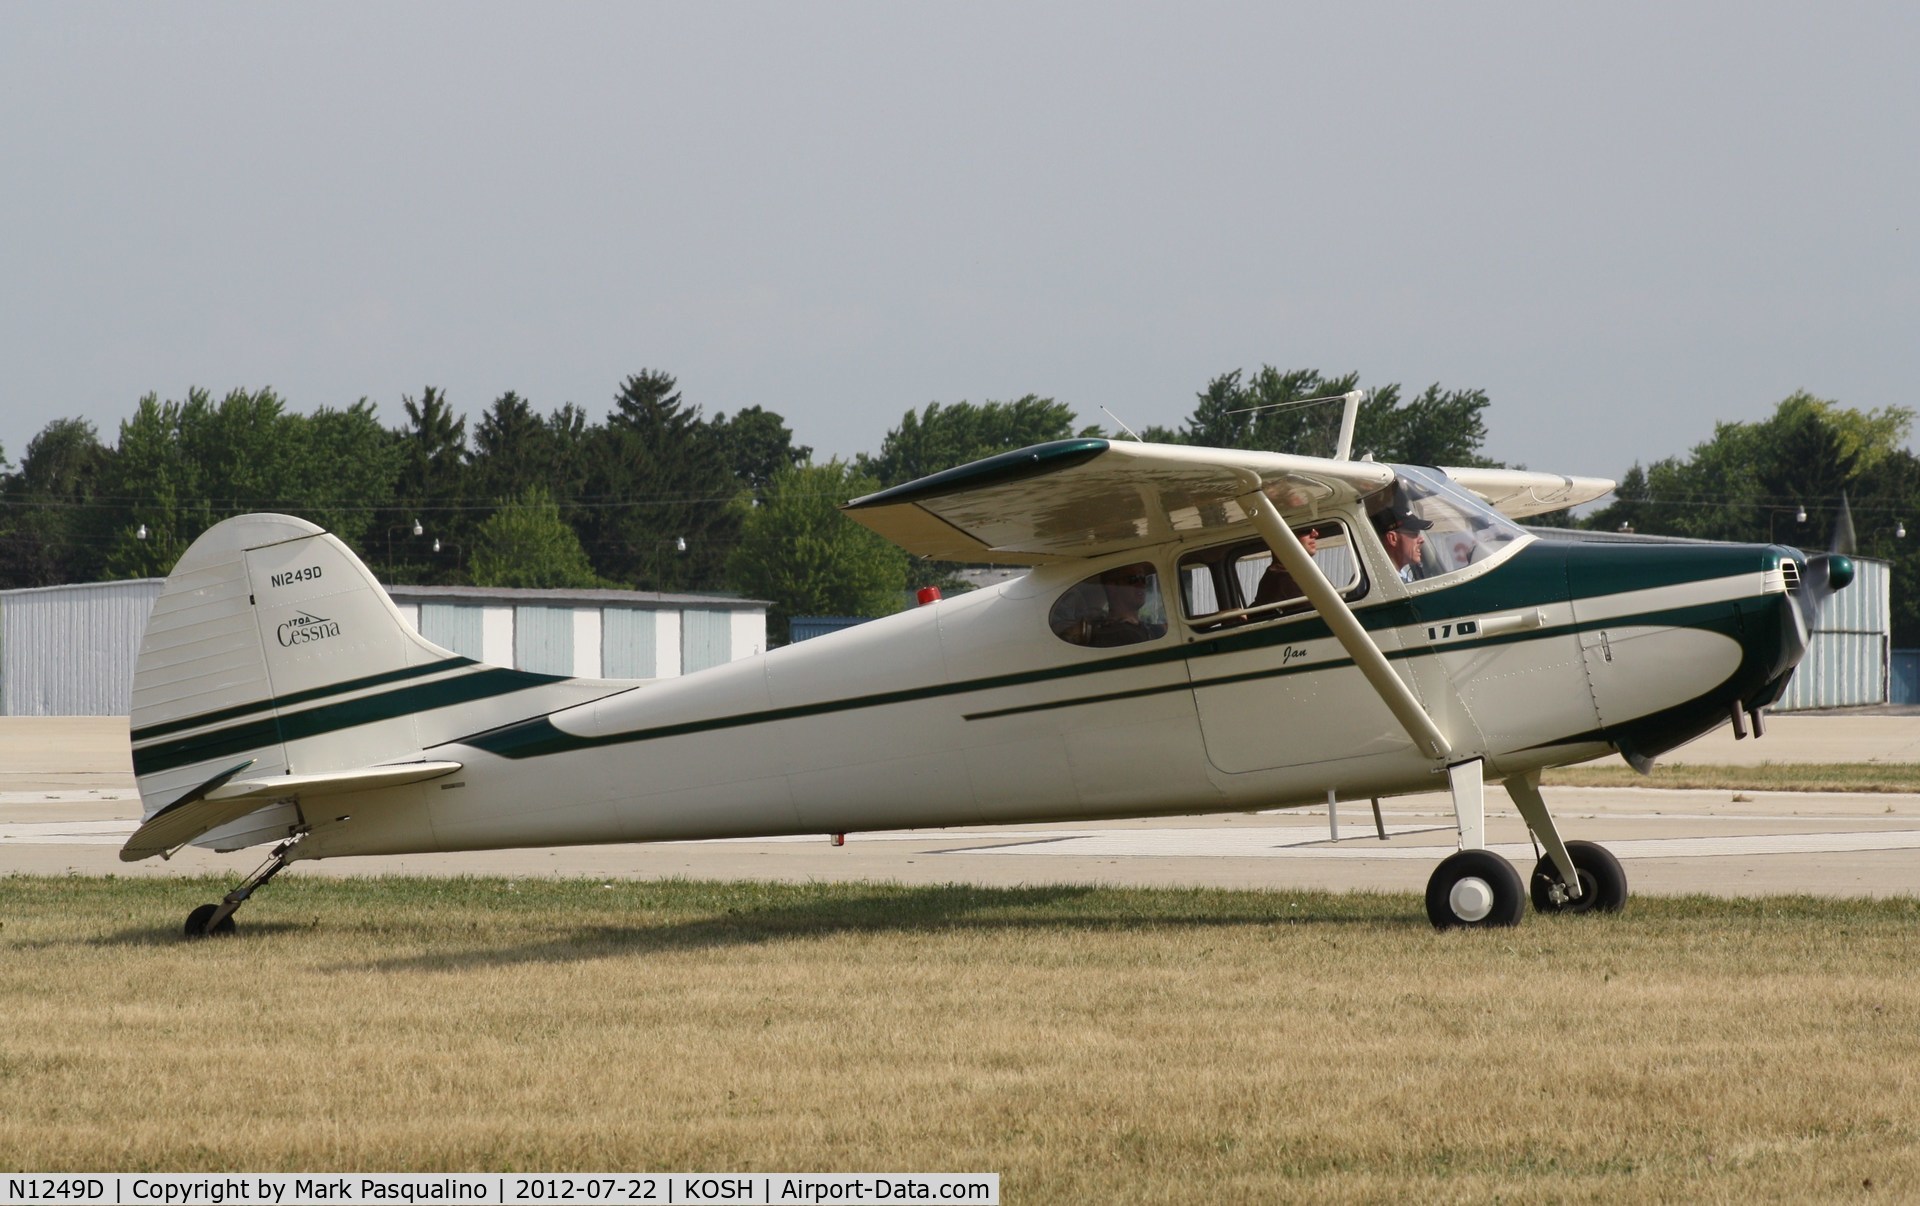 N1249D, 1951 Cessna 170A C/N 20121, Cessna 170A